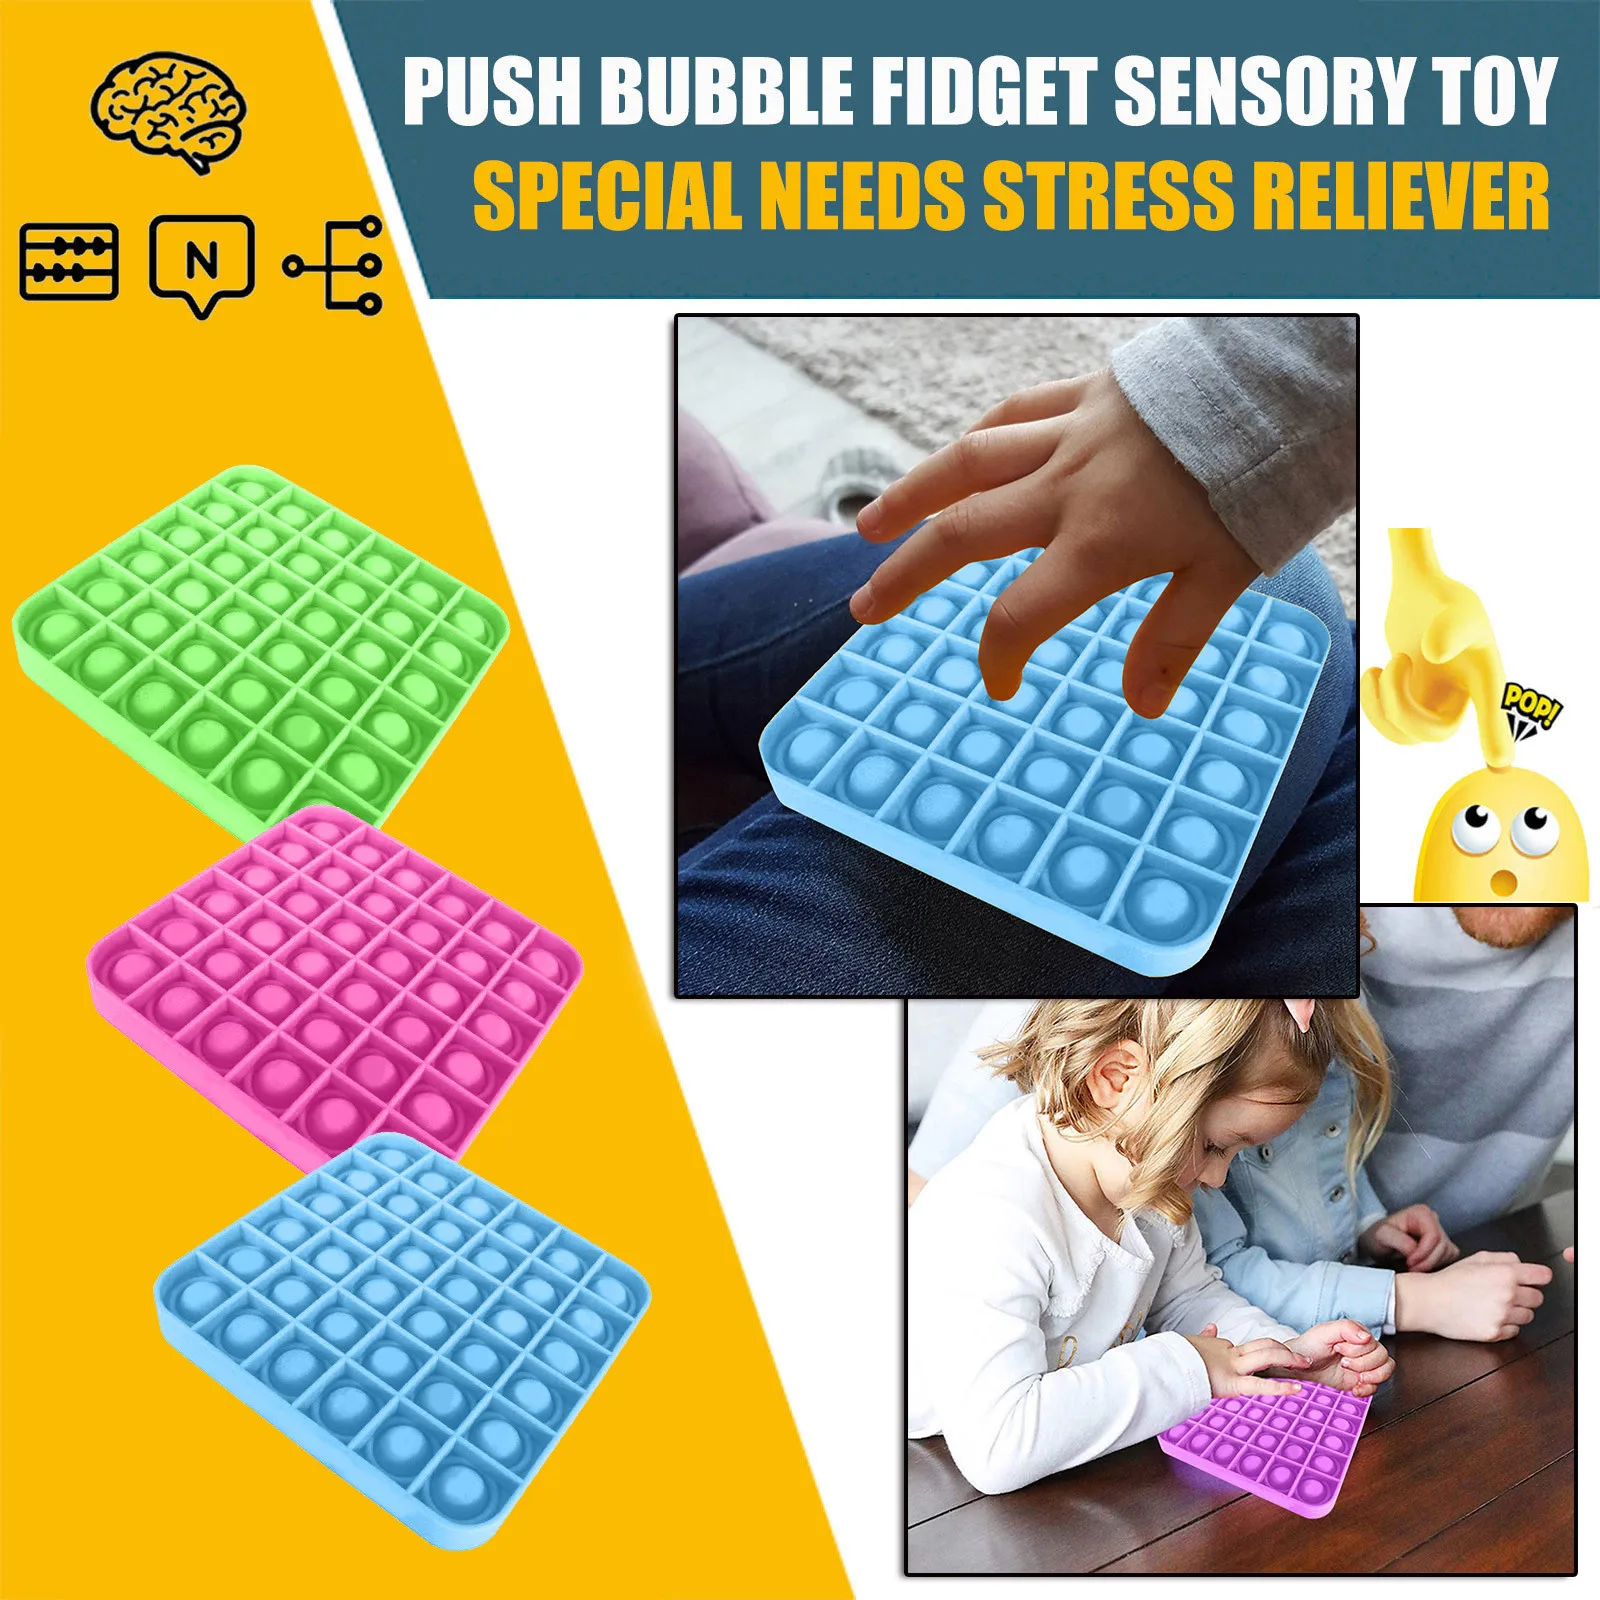 Empuje la Burbuja Fidget Sensorial Juguete Autismo Necesidades Especiales Calmante para el Estrés Rompecabezas juguetes de la novedad de juguete burbujas de aliviar la ansiedad de los juguetes 4